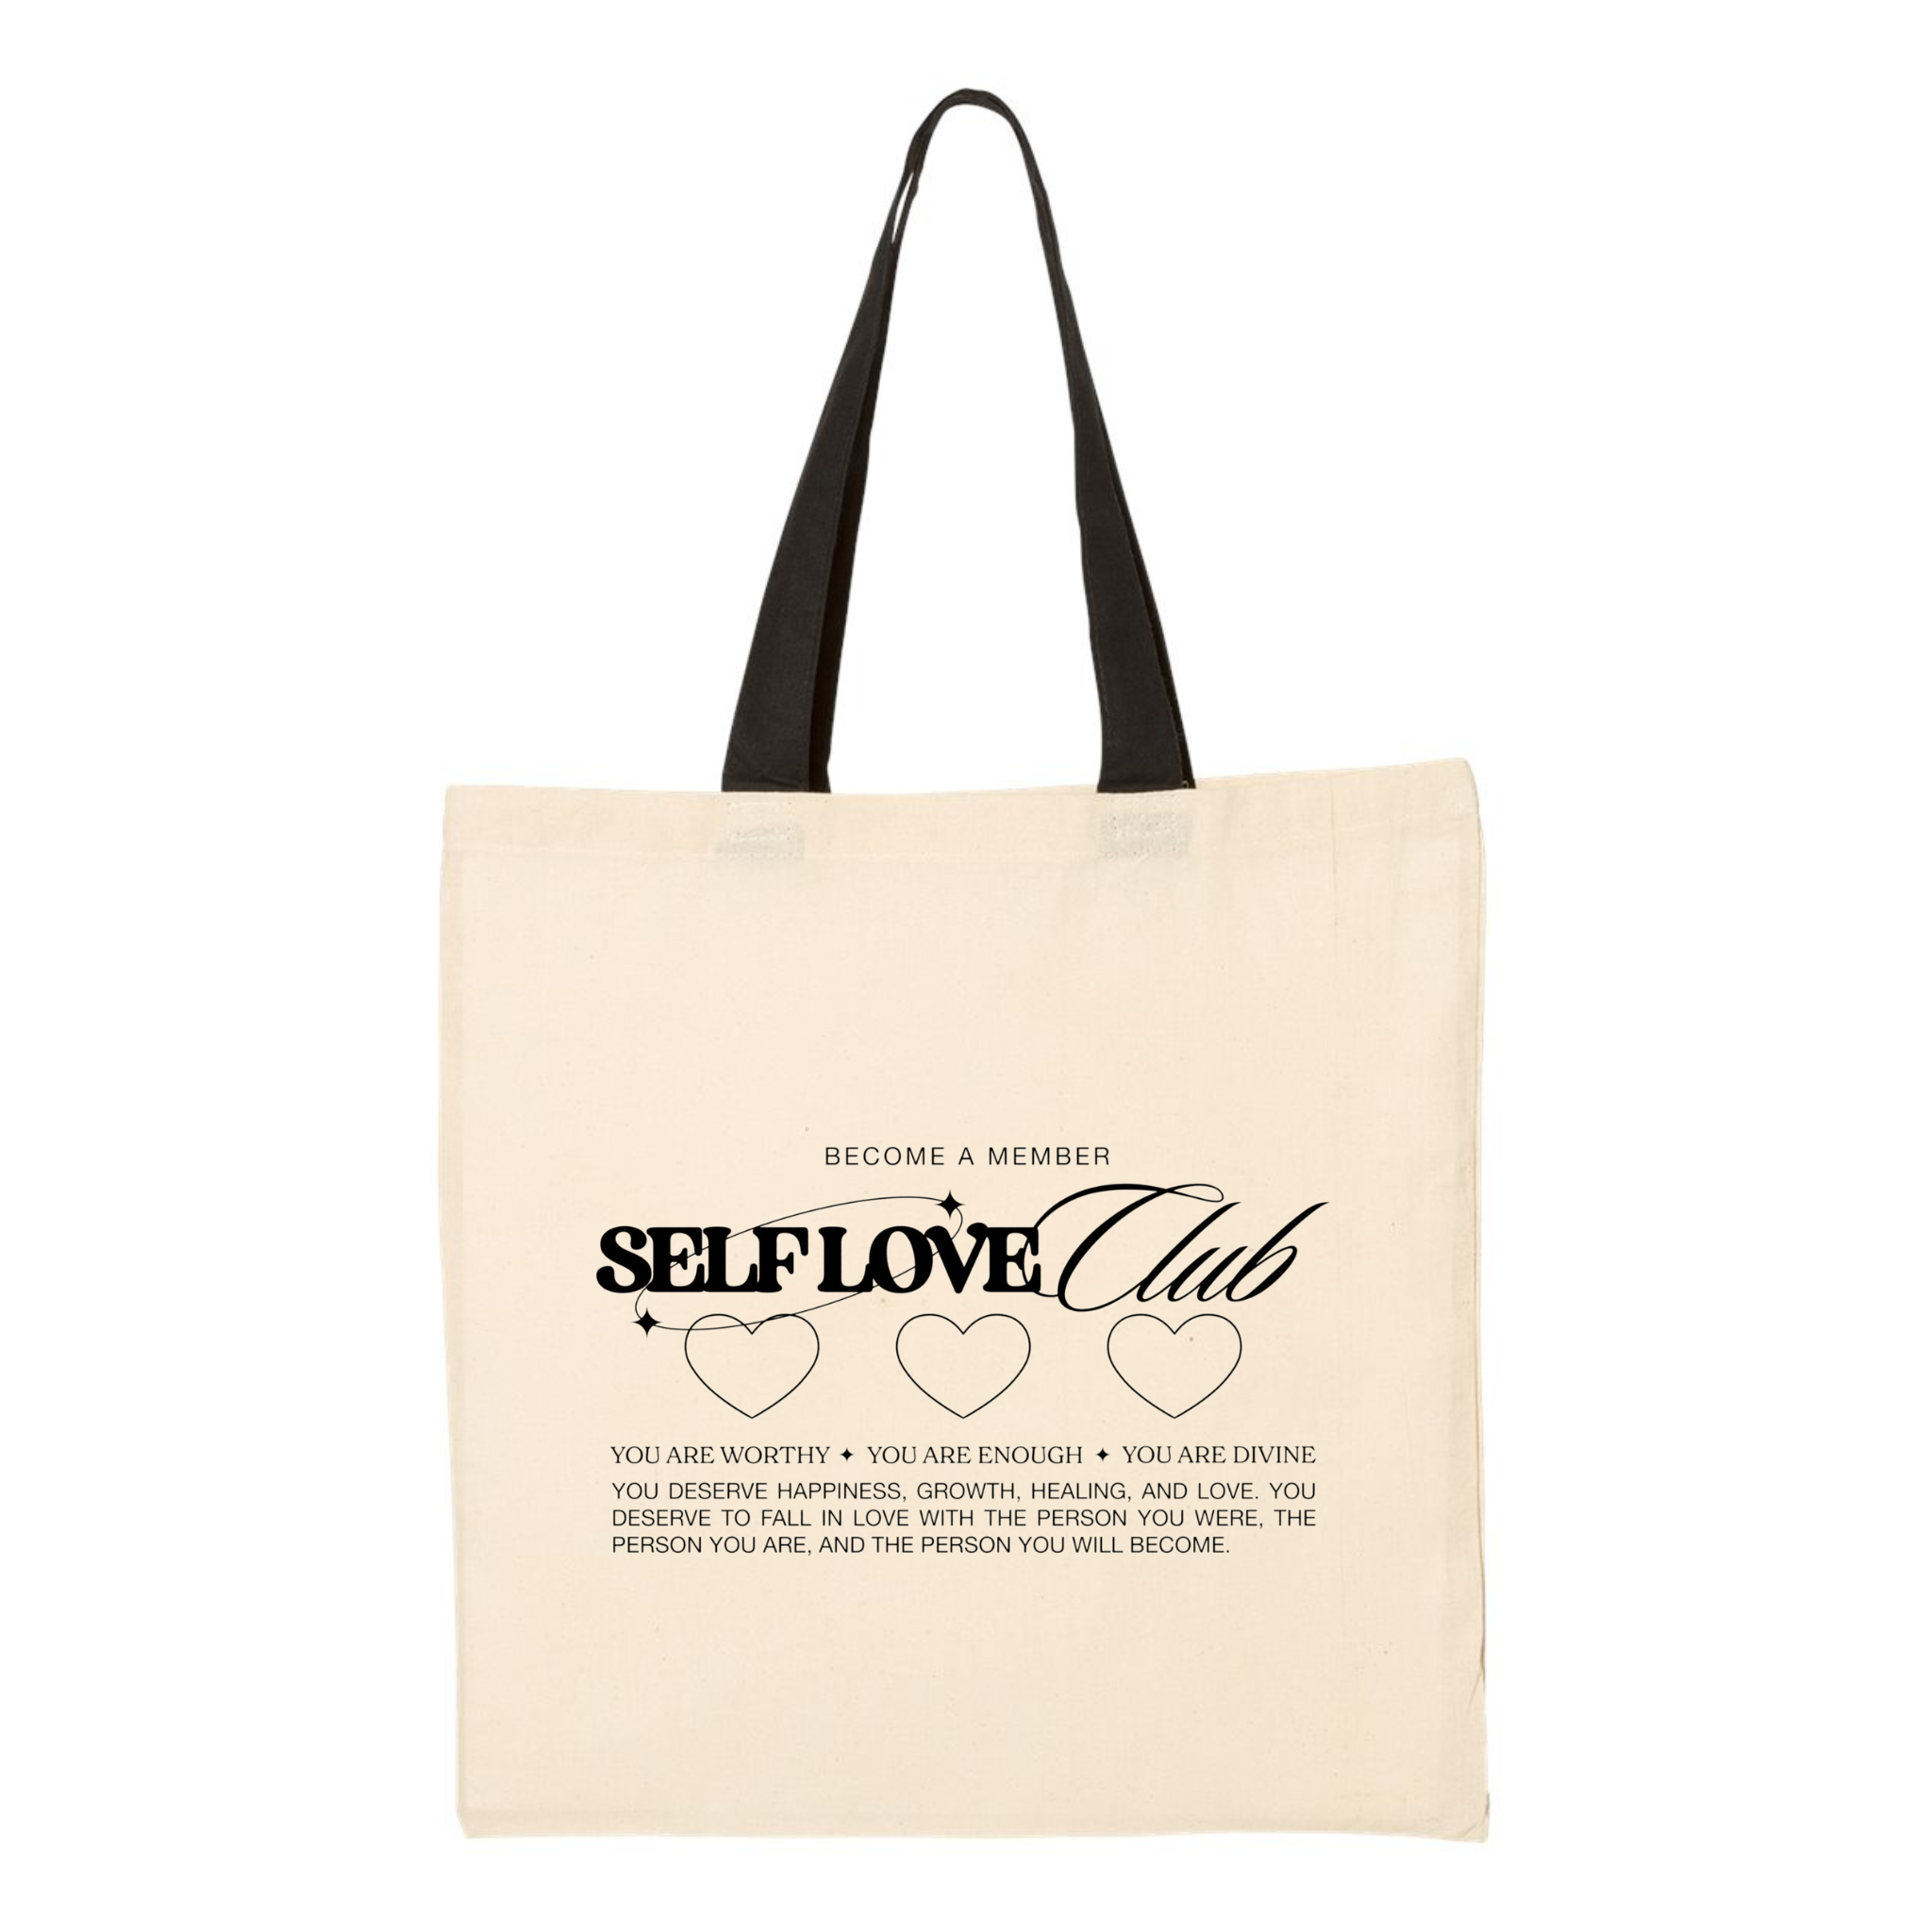 Self Love Clube Tote Bag